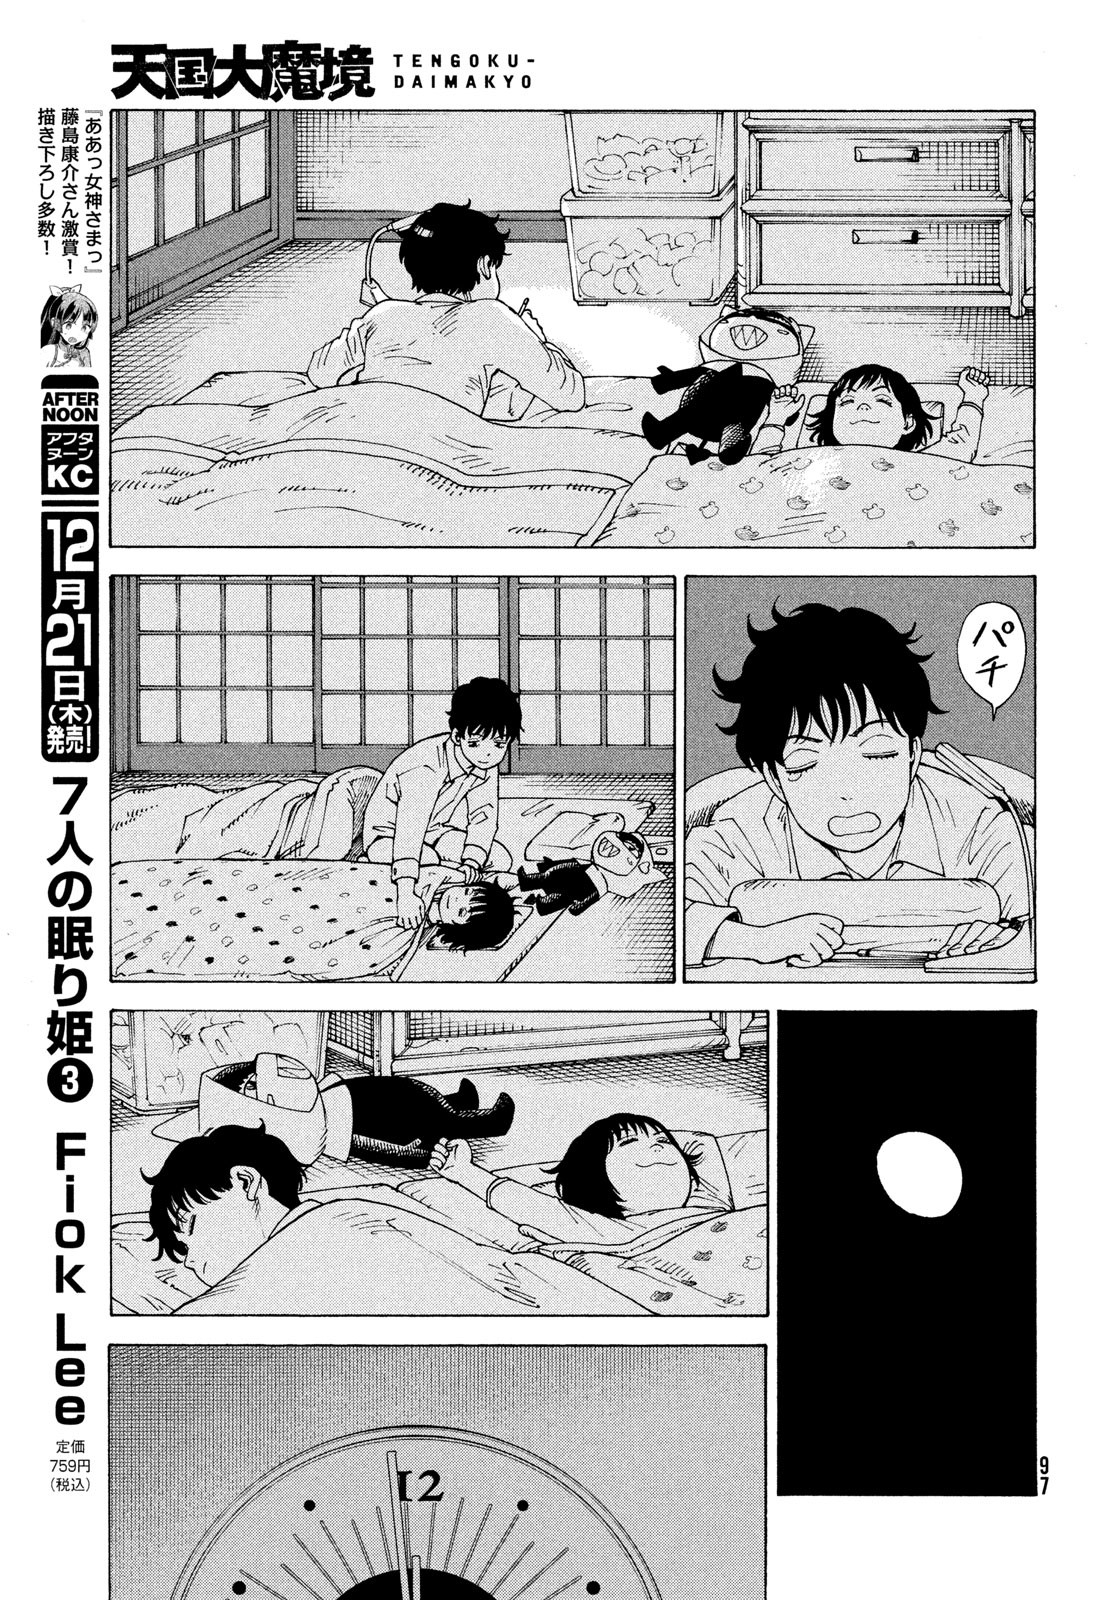 Tengoku Daimakyou - Chapter 59 - Page 27